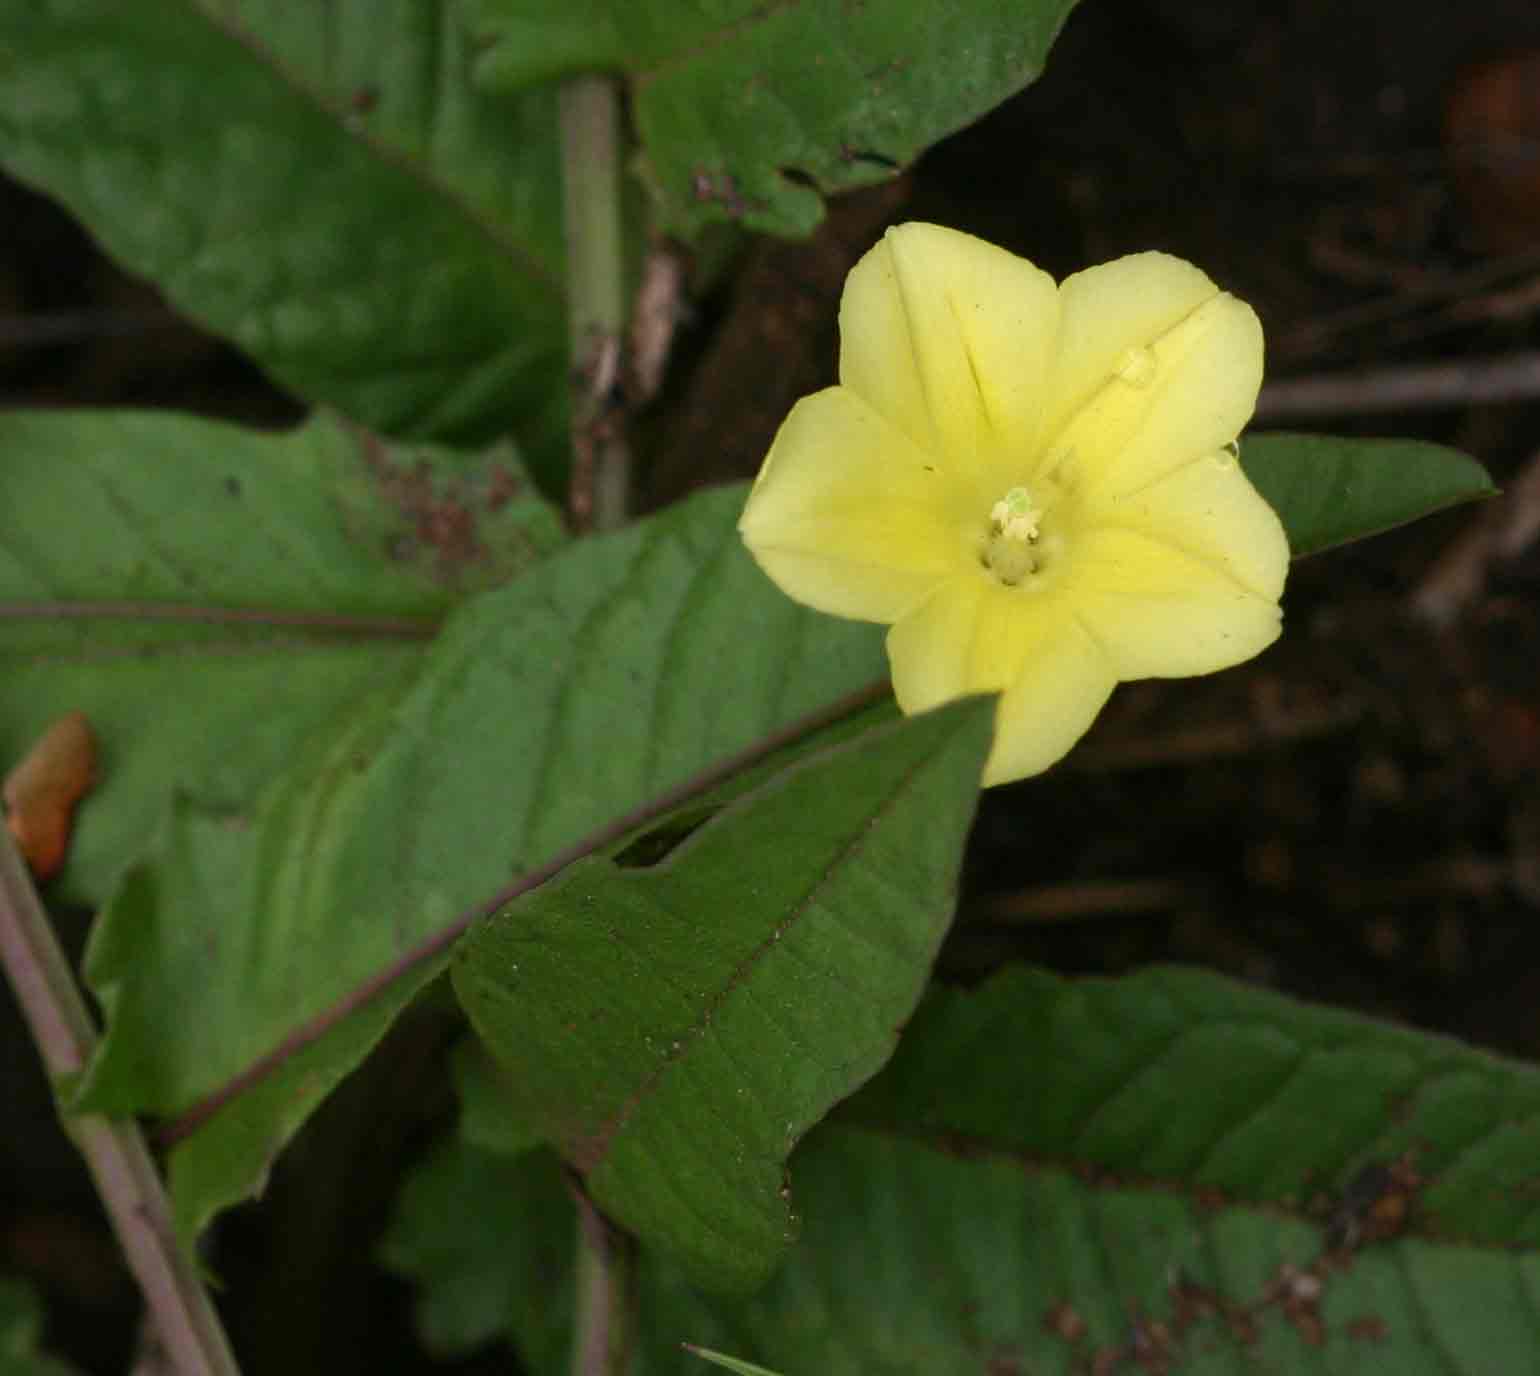 Merremia tridentata subsp. angustifolia